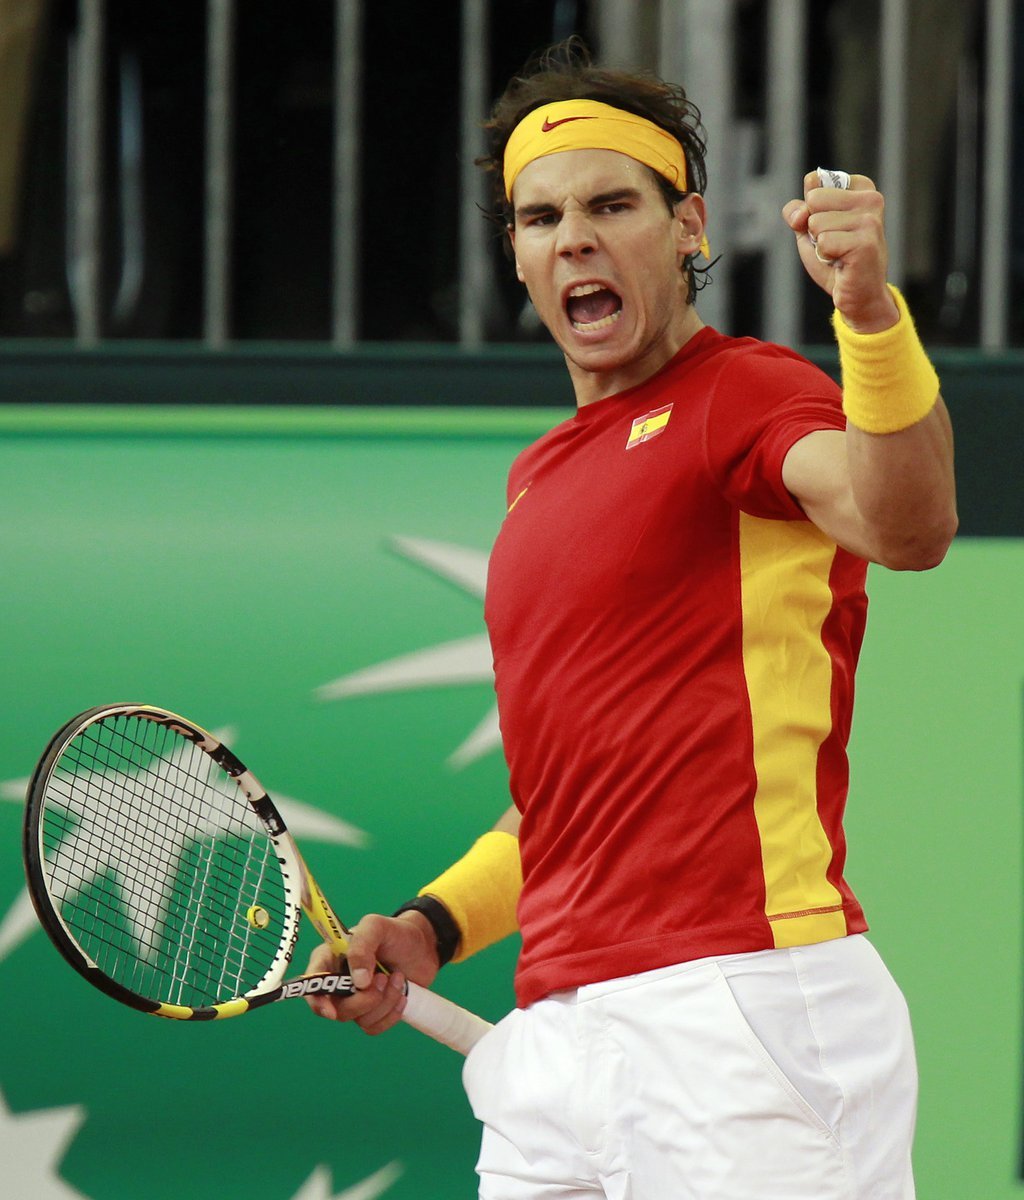 Vamos! Famózní Nadal zařídil Španělsku dva body a přispěl k páté výhře Španělska v Davis Cupu